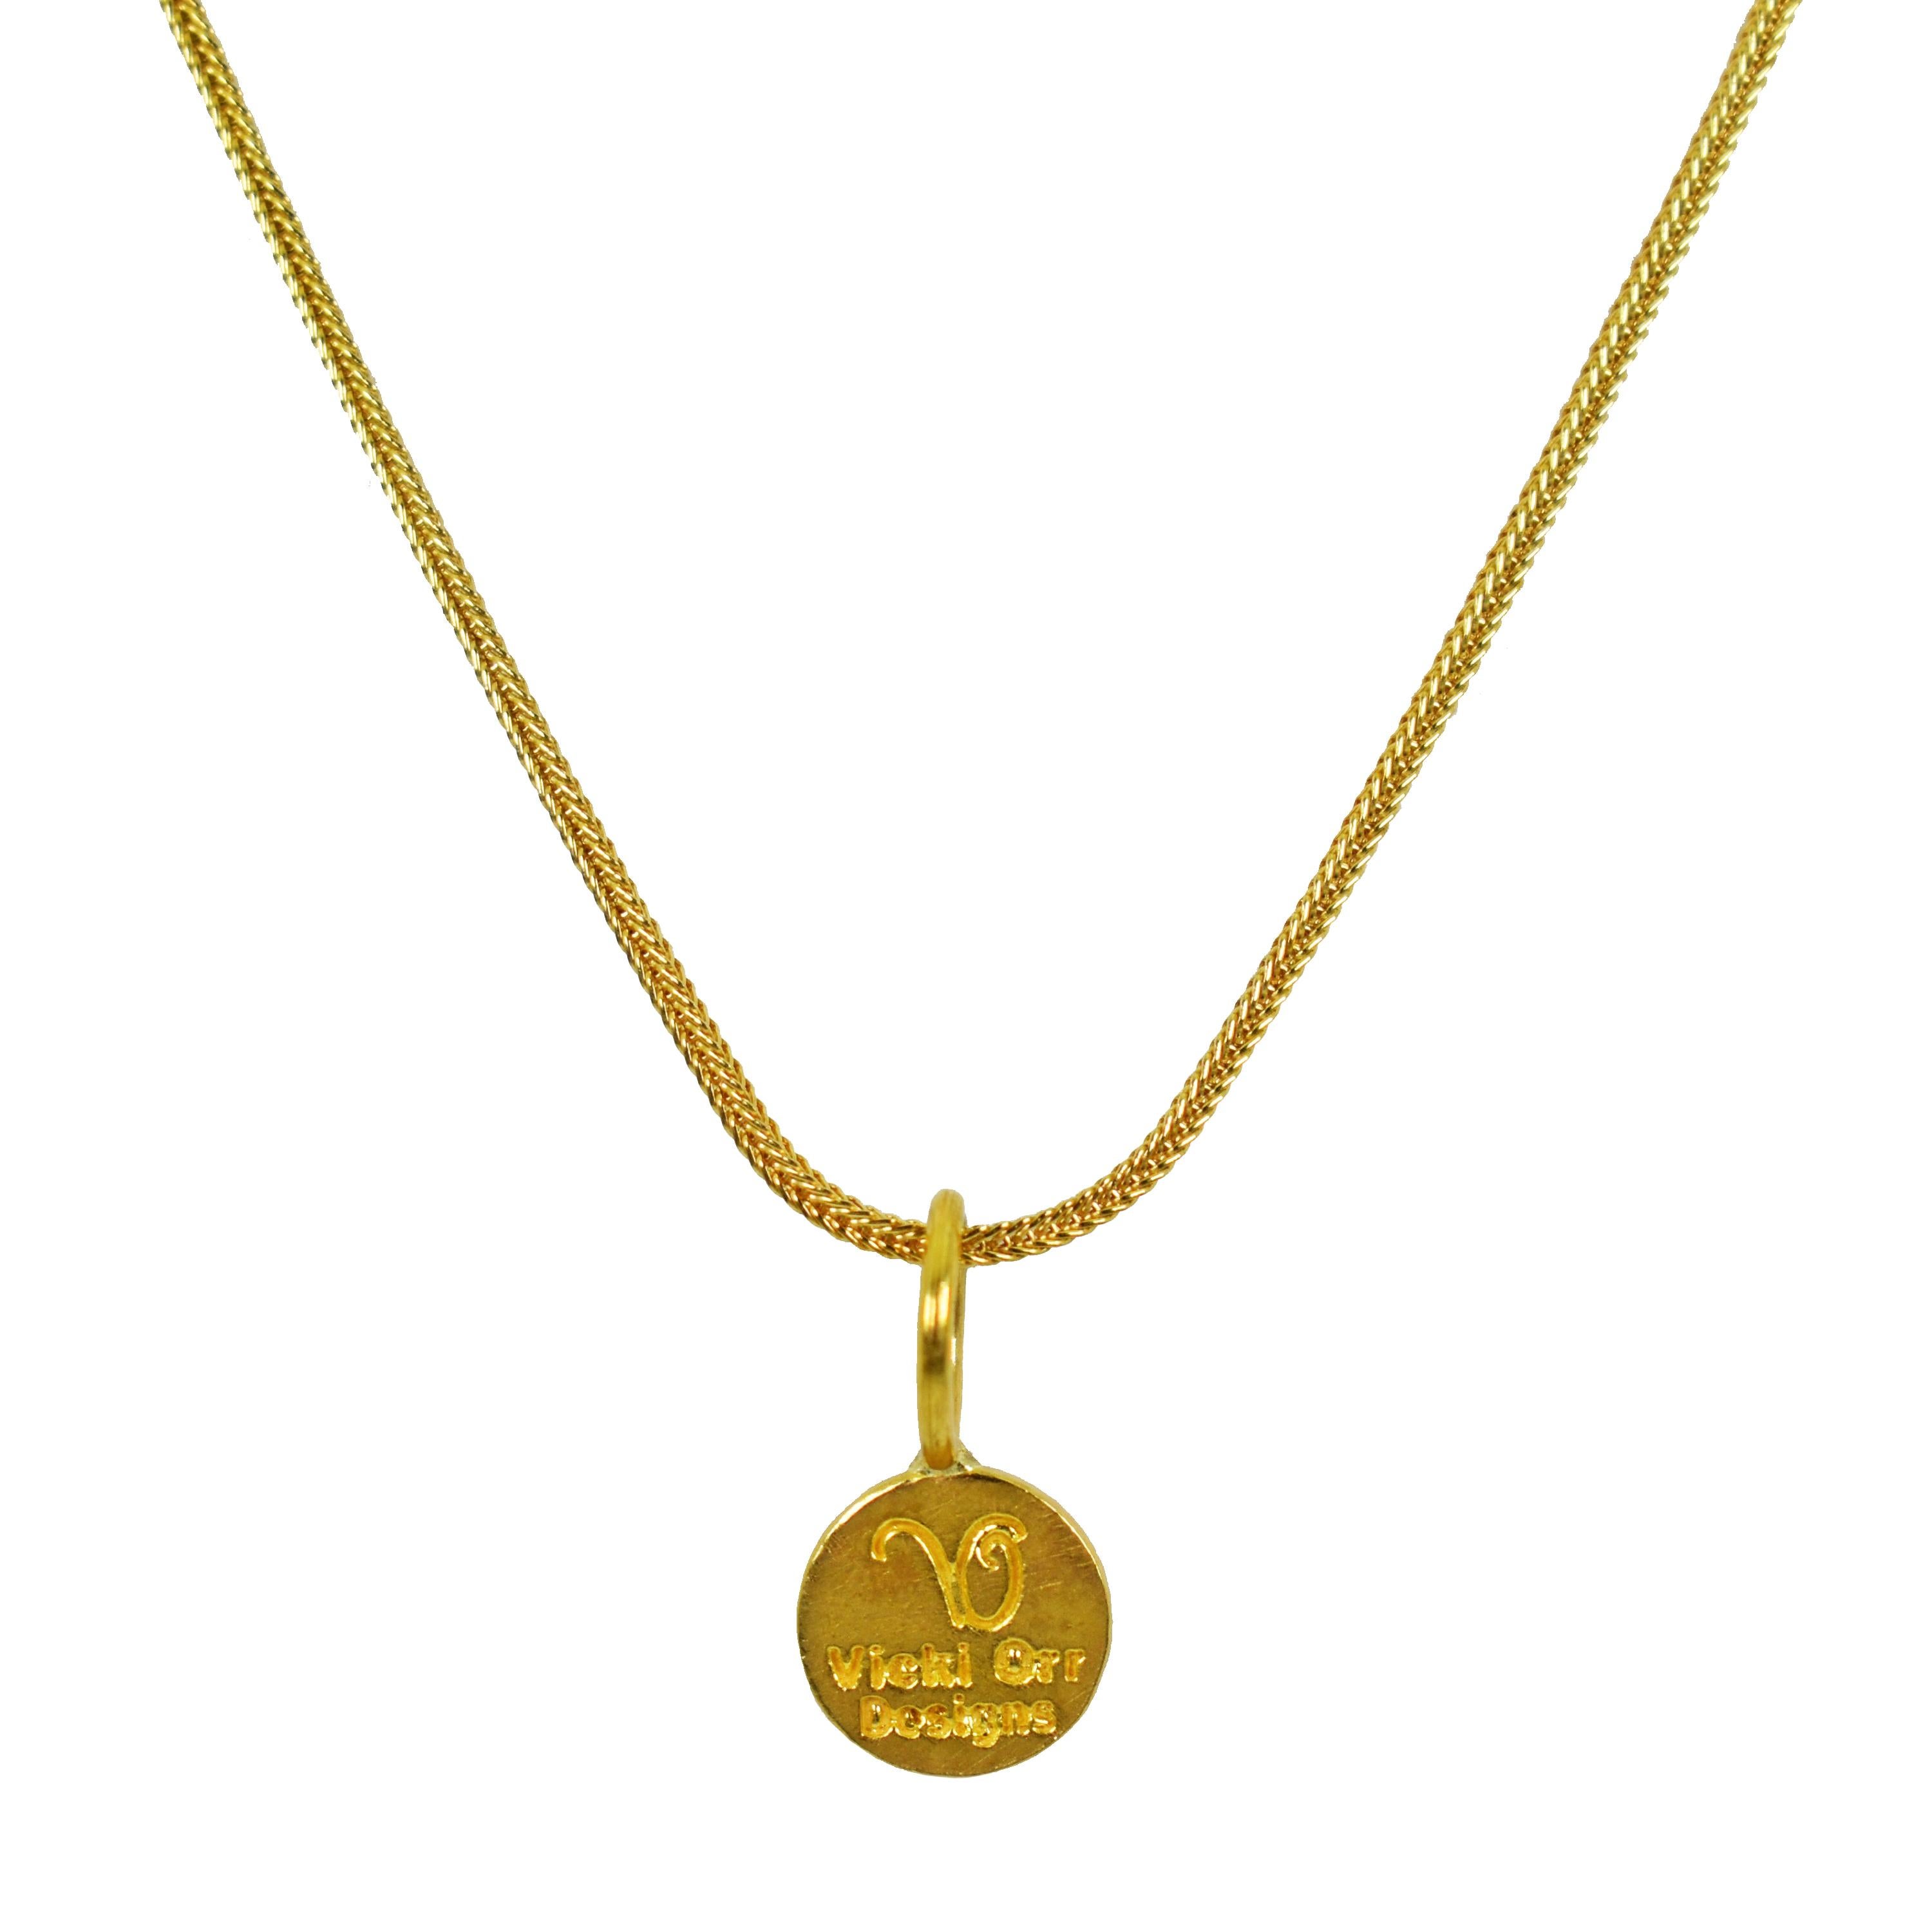 Pendentif breloque en or jaune 22k de l'ancien grec Ixthus ou Ichthus symbole sur un collier de chaîne de queue de renard de 18 pouces en or 18k. Le pendentif à breloques mesure 0,69 pouce de long. 